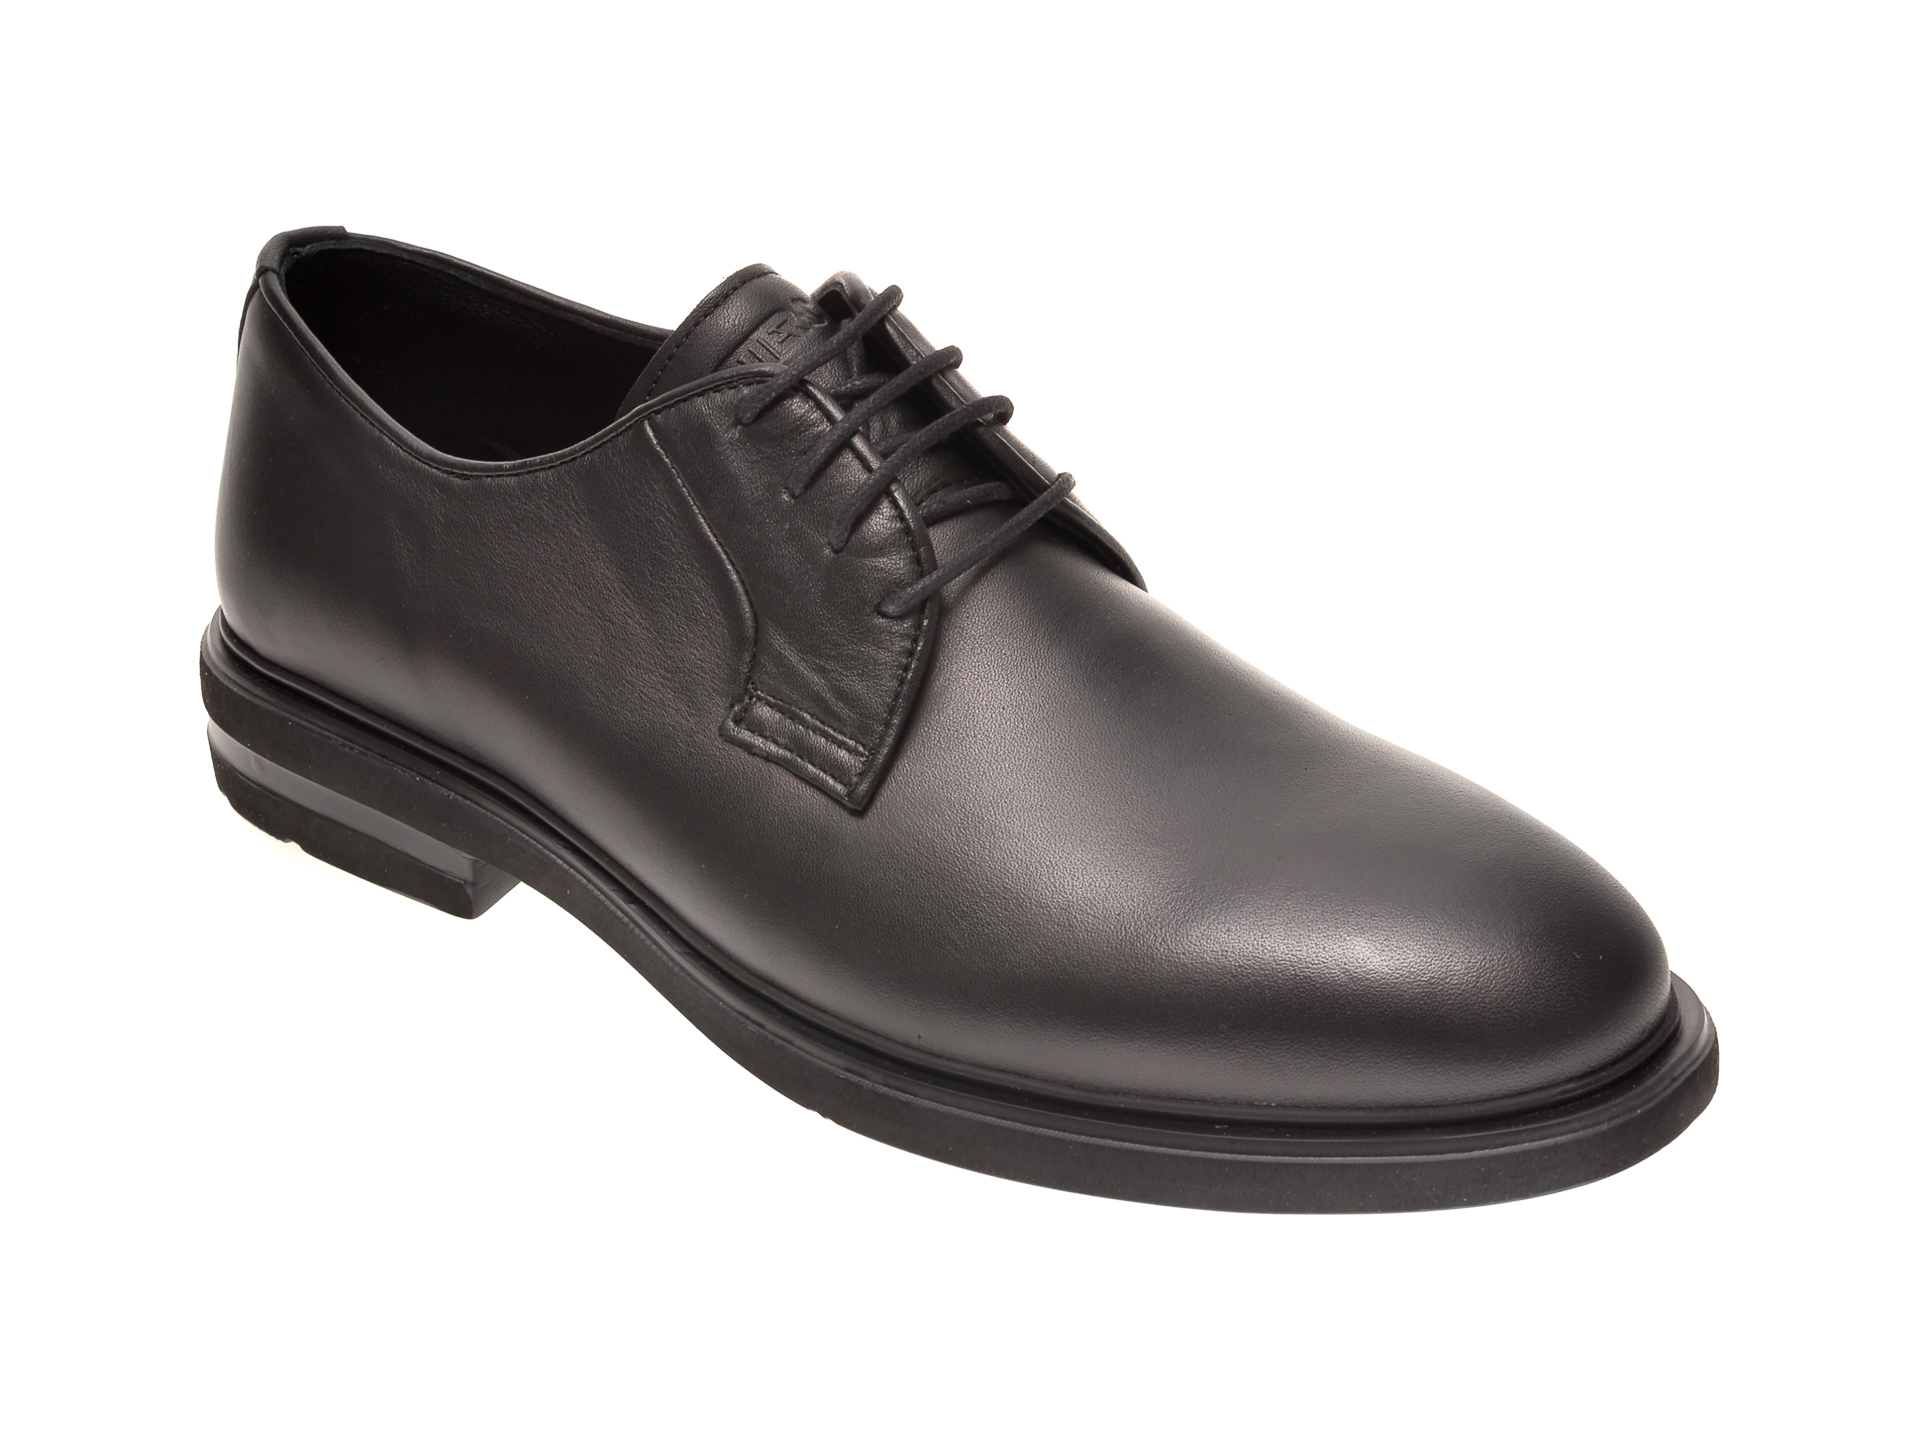 Pantofi OTTER negri, E1801, din piele naturala Otter poza reduceri 2021